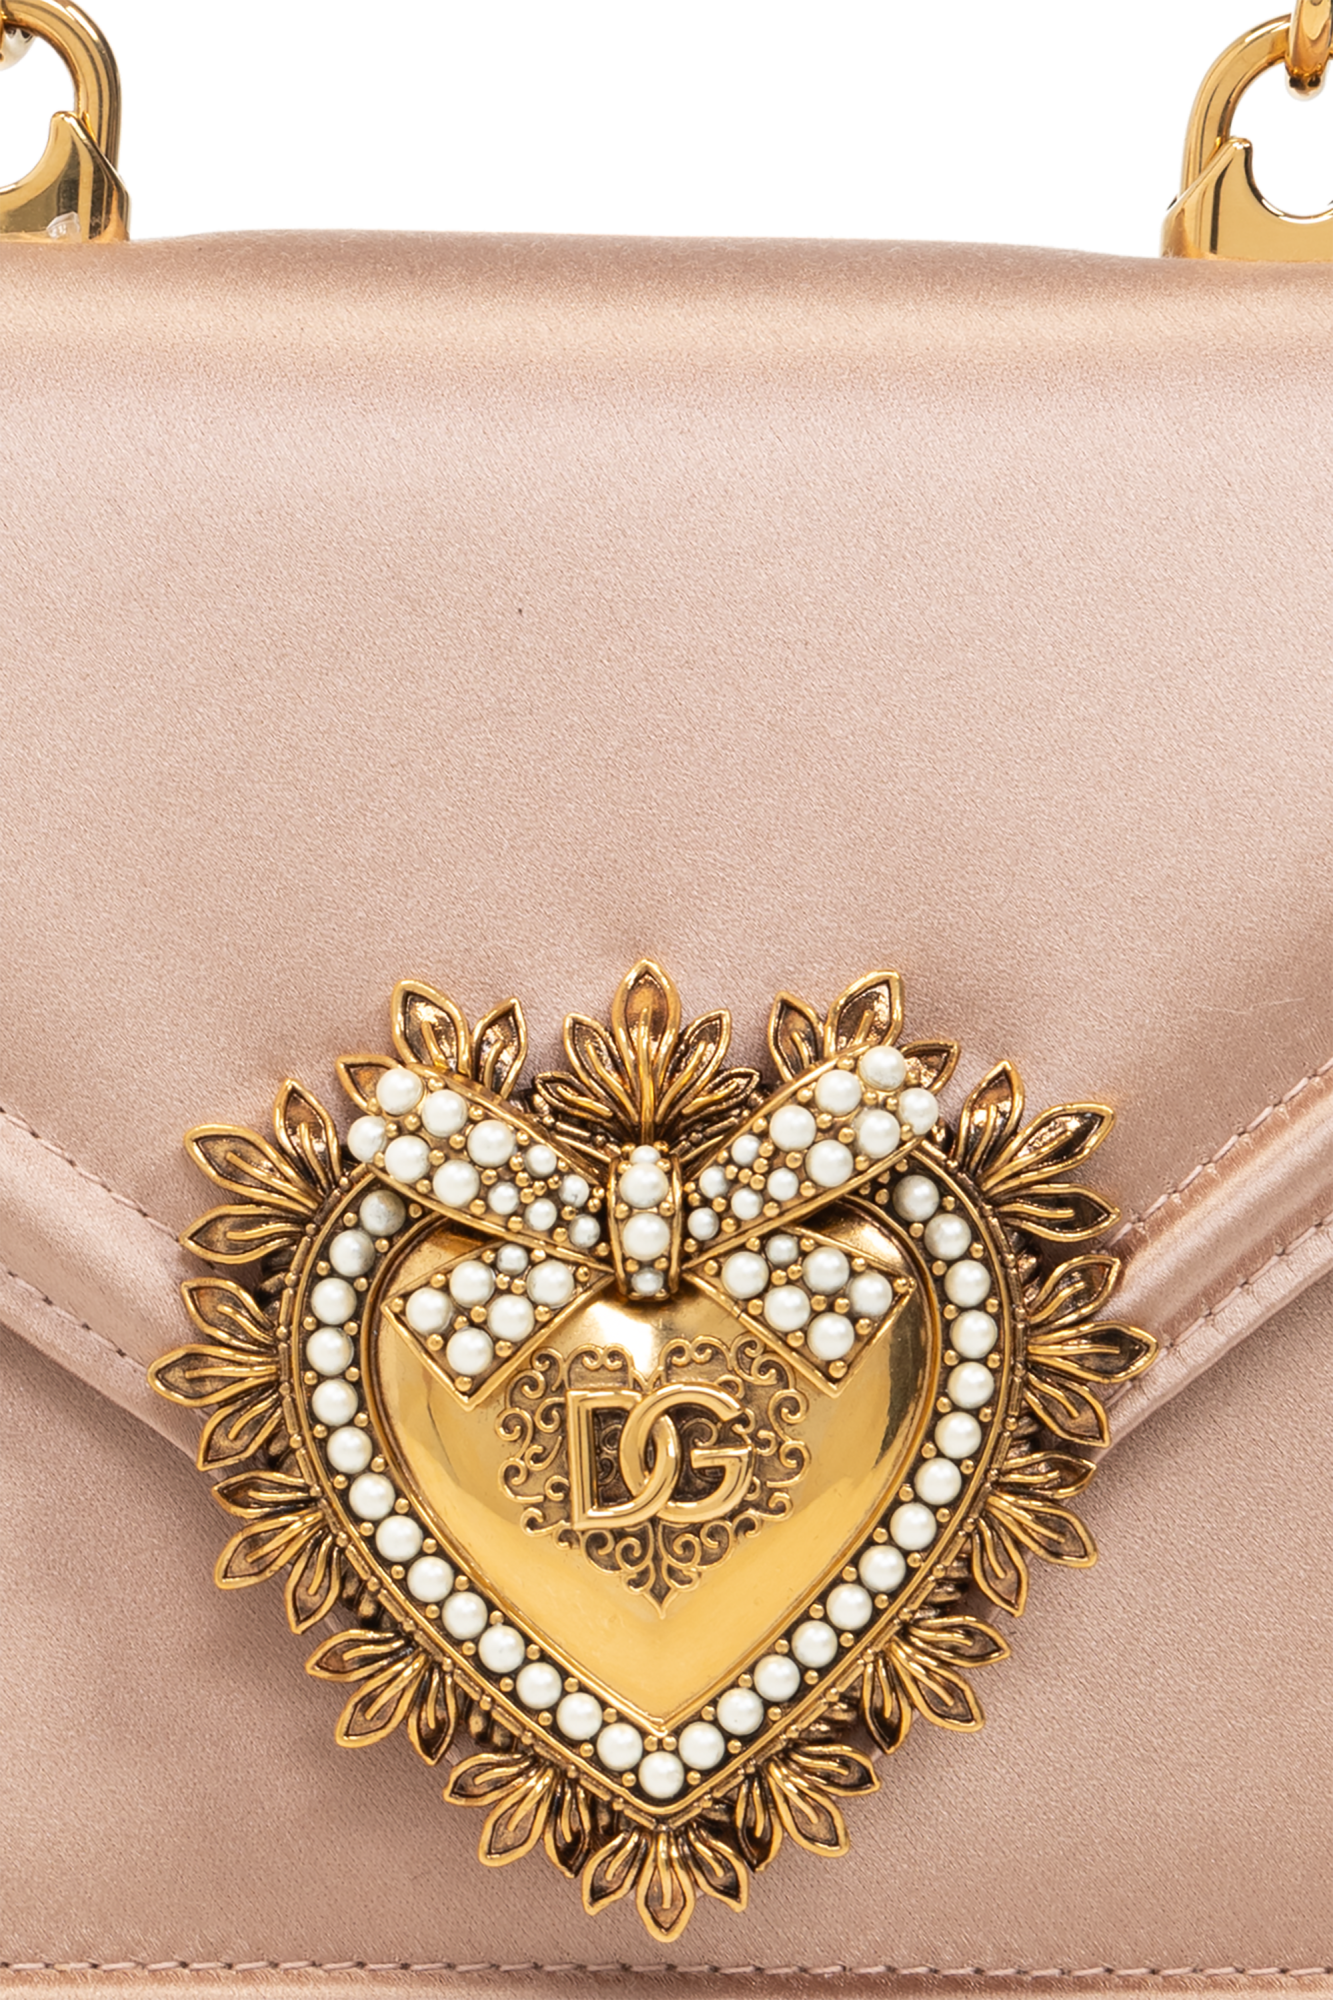 Dolce & Gabbana Cravates & pochettes Devotion Small shoulder bag